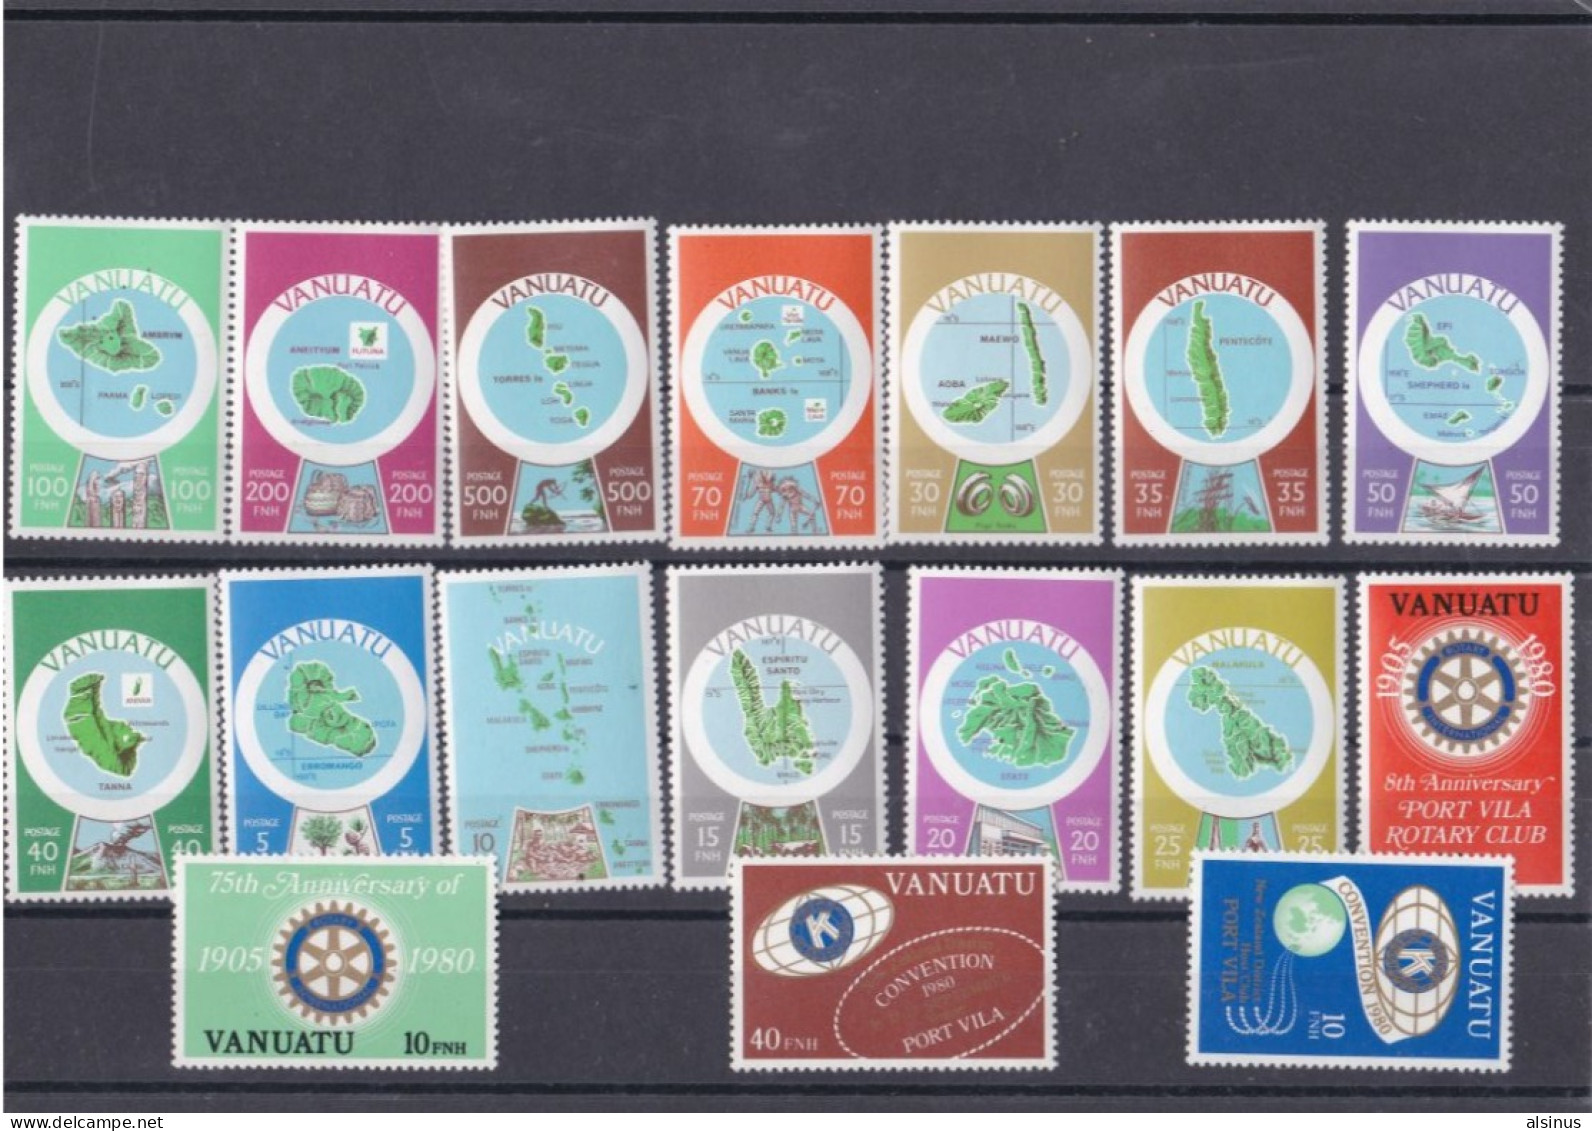 VANUATU - 1980 -  N°596/608 - CARTOGRAPHIE DES ILES  - 4 TIMBRES DIVERS DE 1980 - Vanuatu (1980-...)